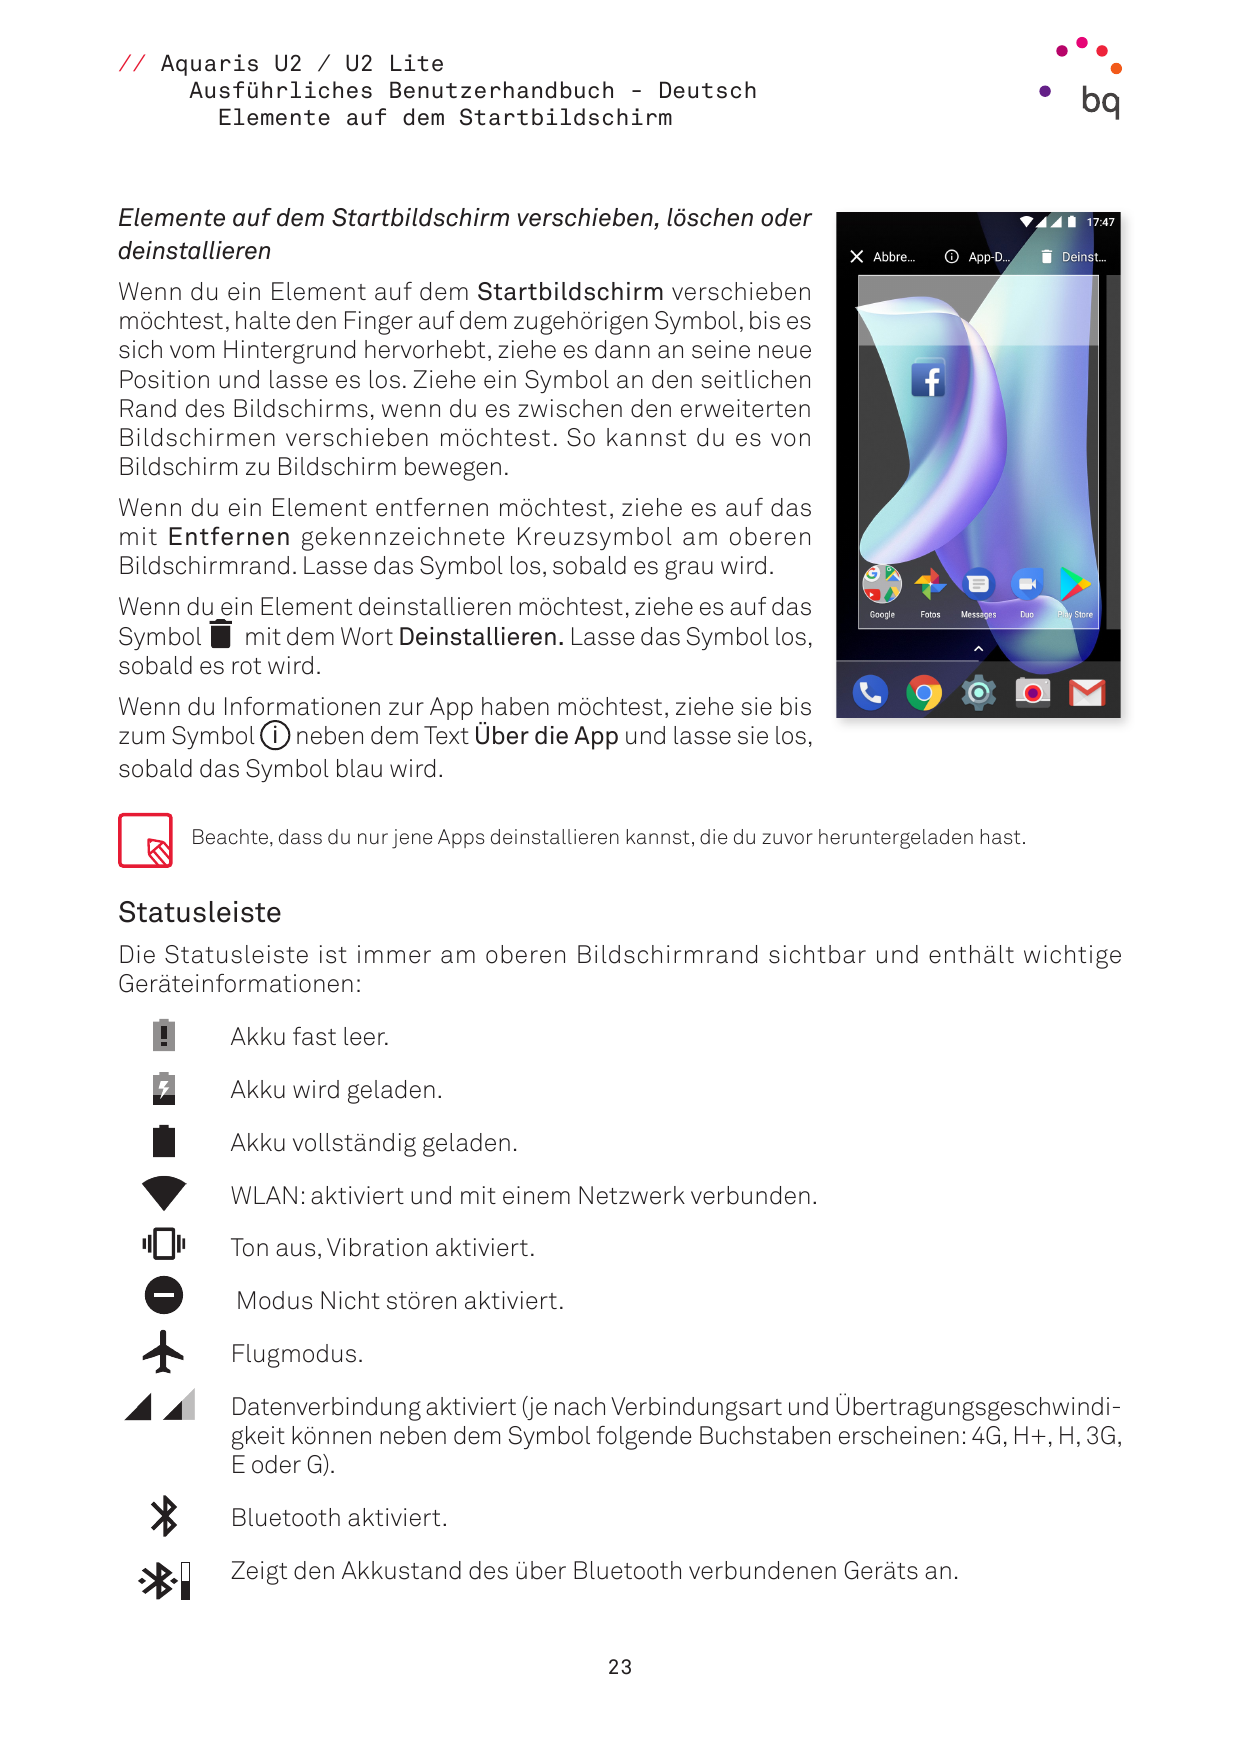 // Aquaris U2 / U2 LiteAusführliches Benutzerhandbuch - DeutschElemente auf dem StartbildschirmElemente auf dem Startbildschirm 